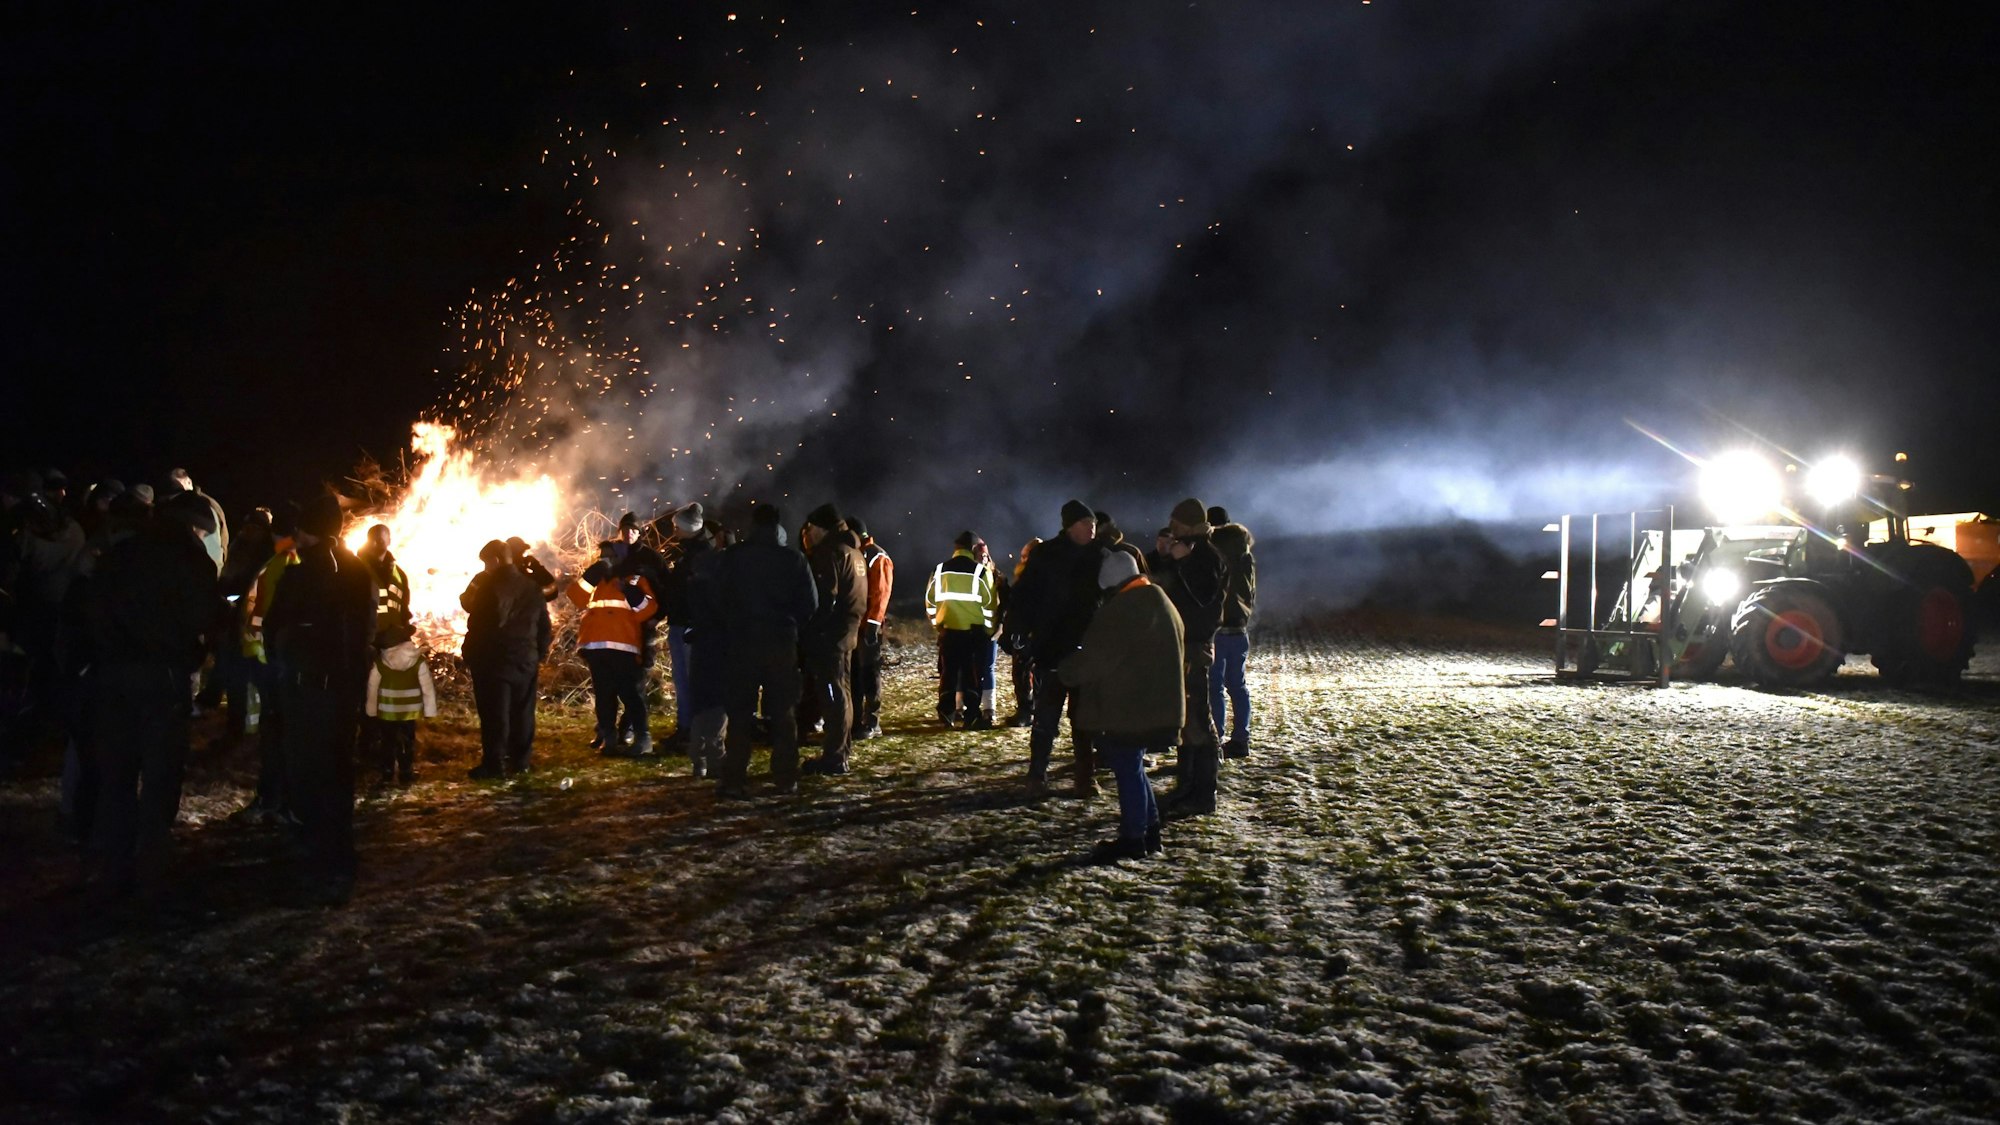 Eine Gruppe Menschen steht im Dunkeln an einem großen Feuer, rechts im Bild ist ein Traktor mit angeschaltetem Licht zu sehen.